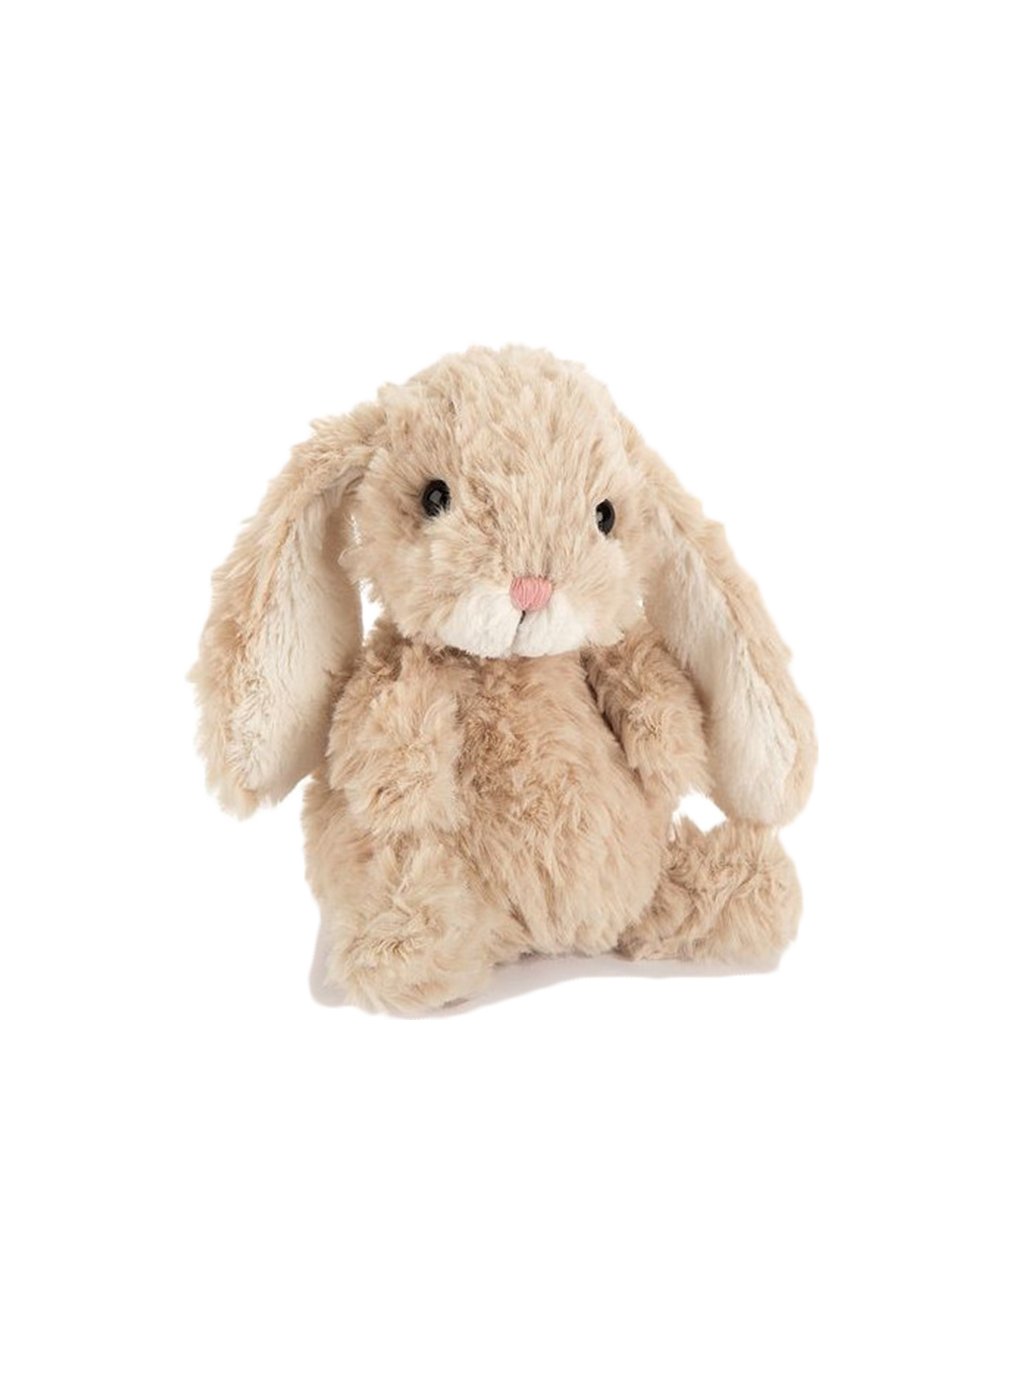 Cuddly little fluffy bunny